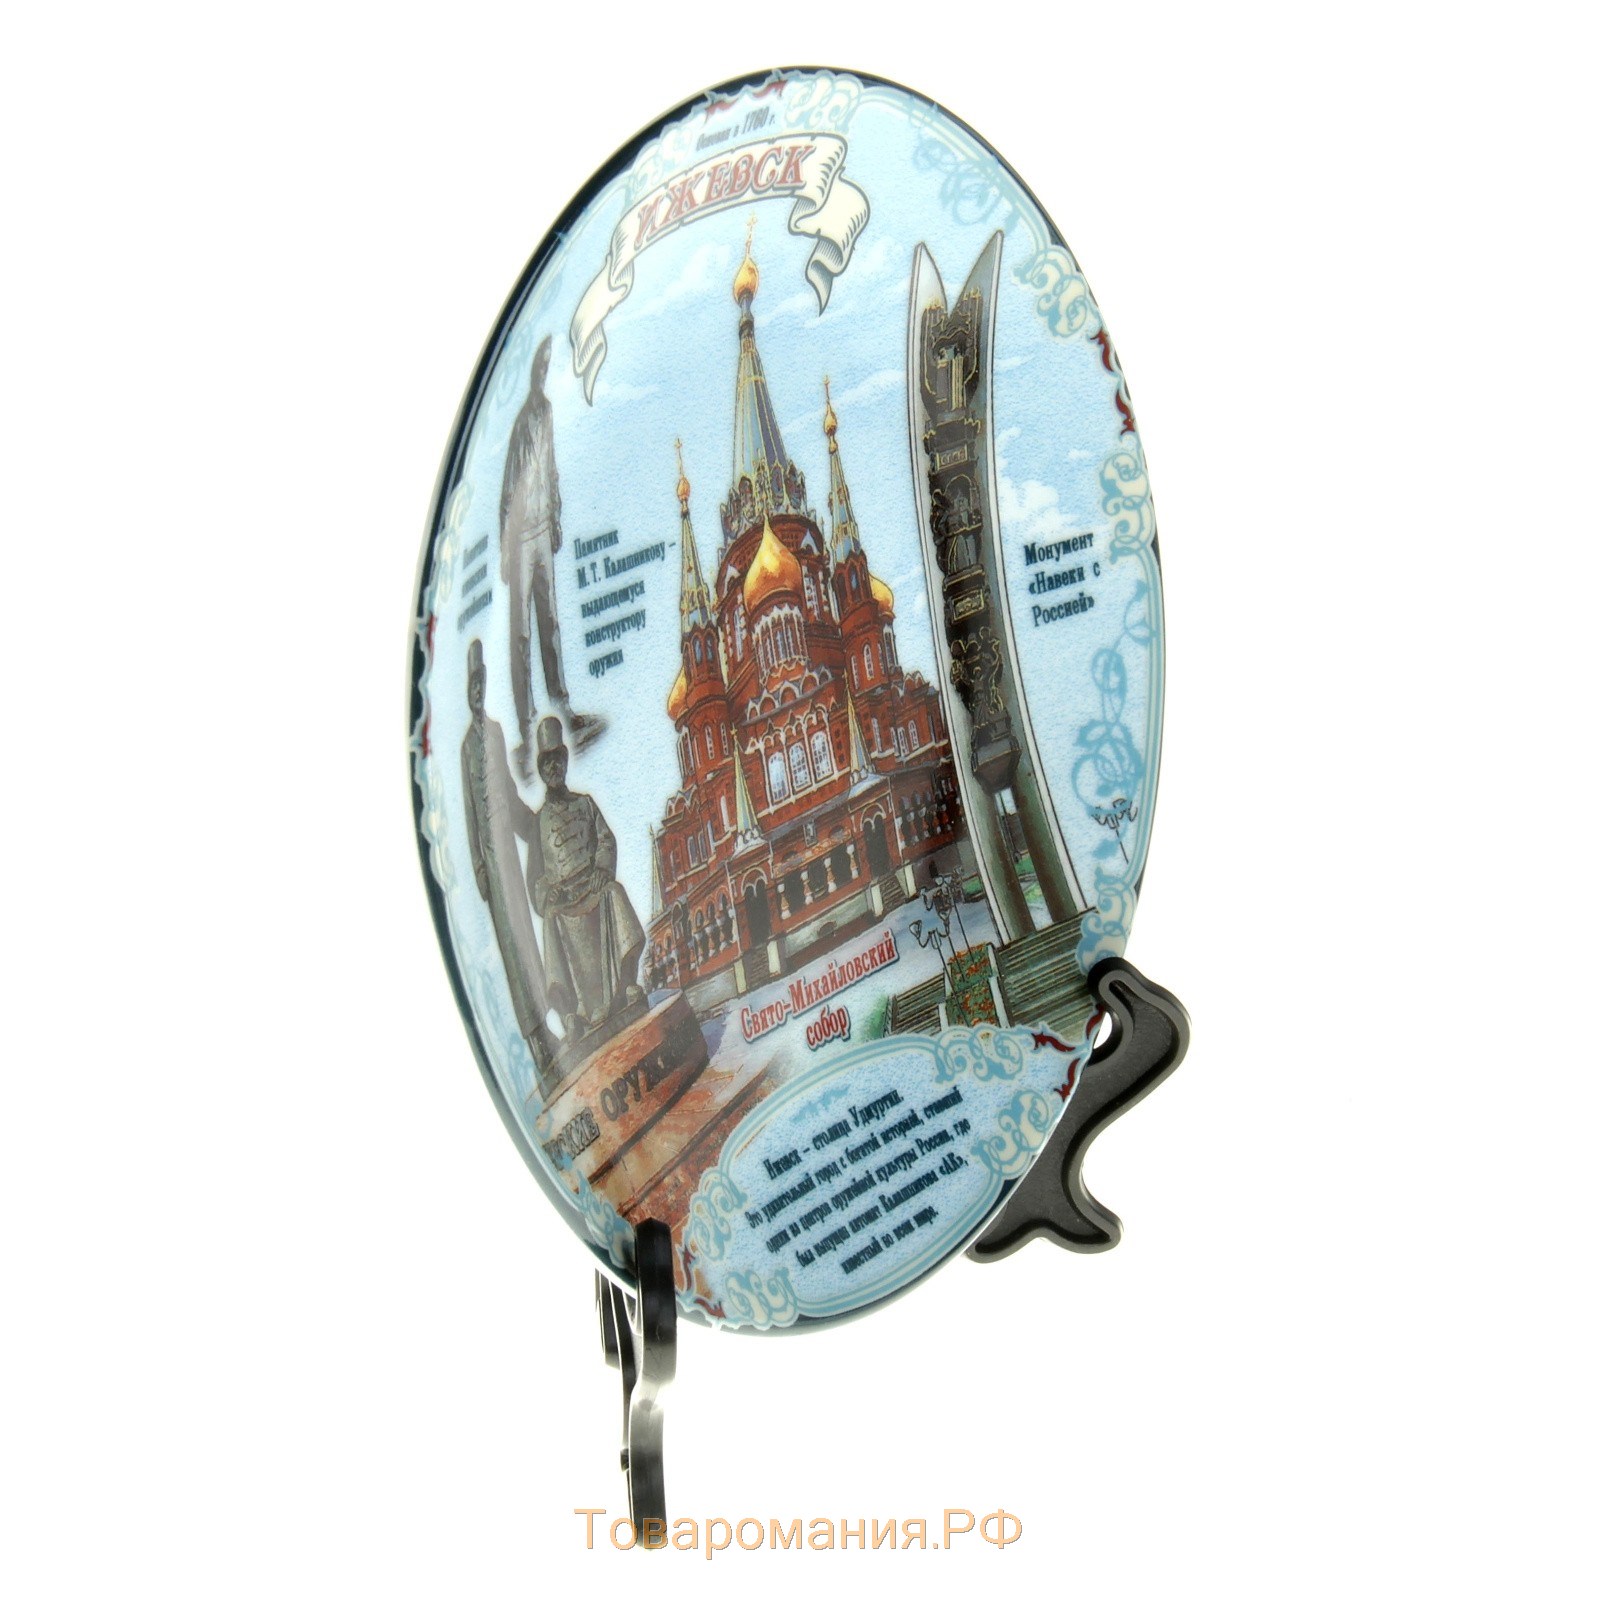 Тарелка сувенирная "Ижевск", 15 см, керамика, деколь